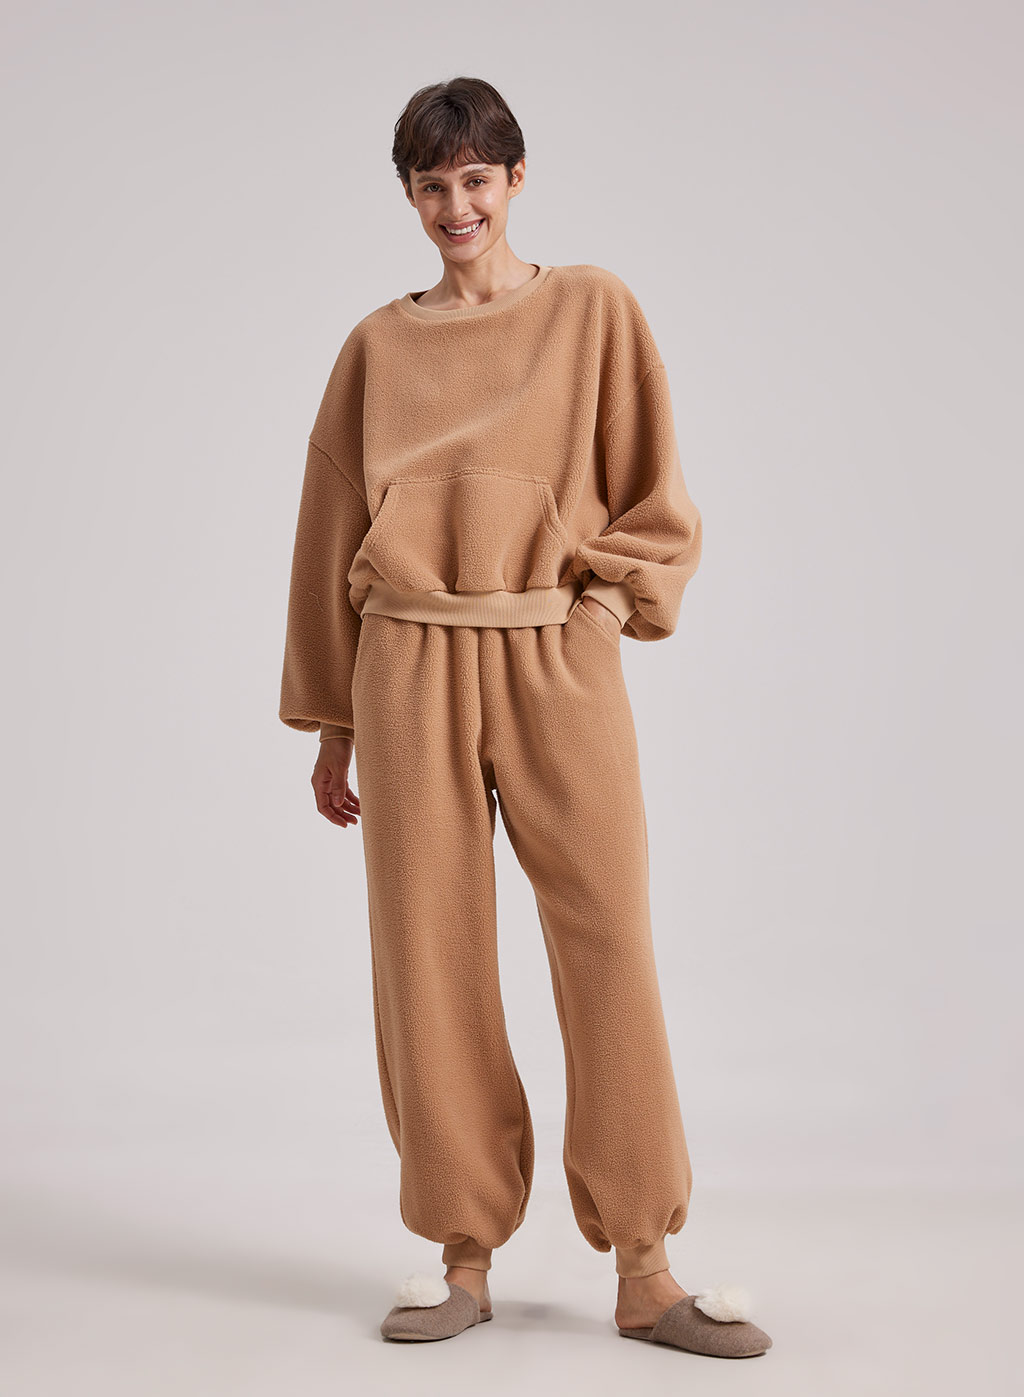 Women Fuzzy Pajama Set 2 Piece Warm Sweatsuit | Nap Loungewear